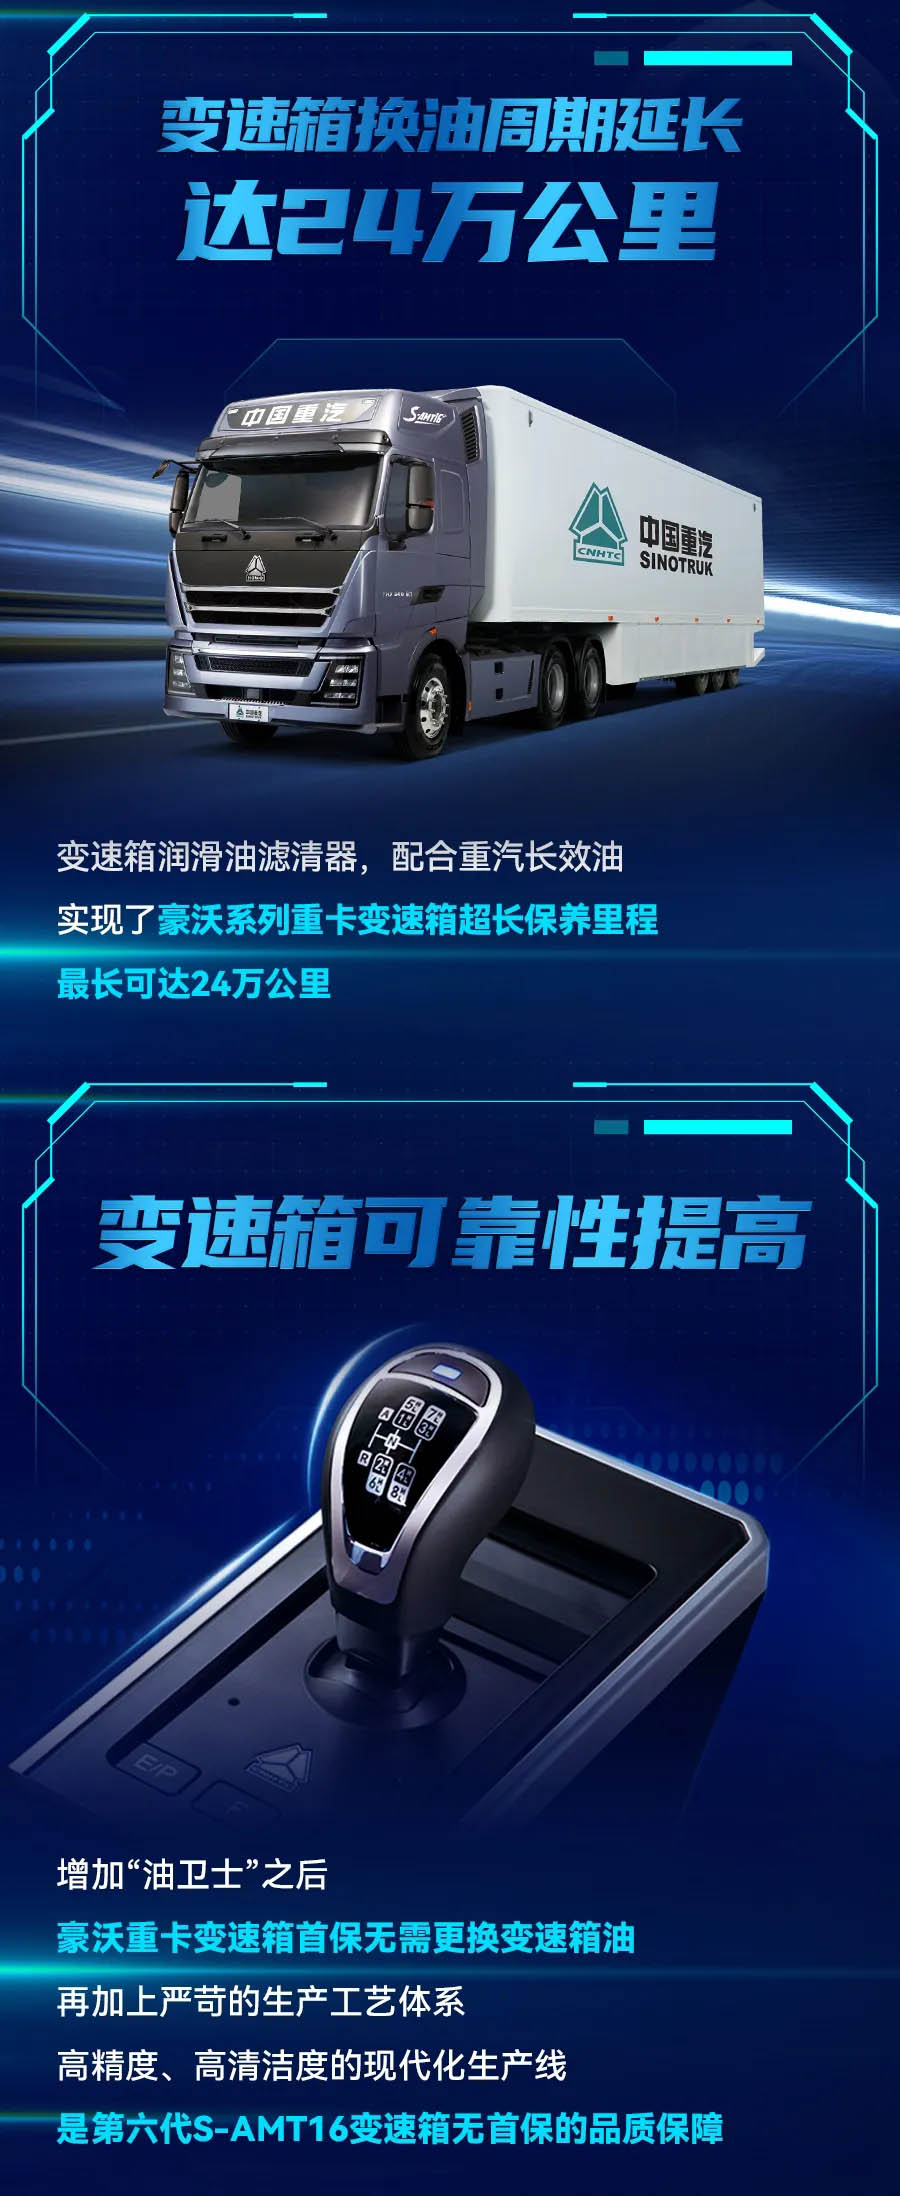 据中国重汽销售部官微最新消息，中国重汽第六代S-AMT16变速箱重磅来袭。